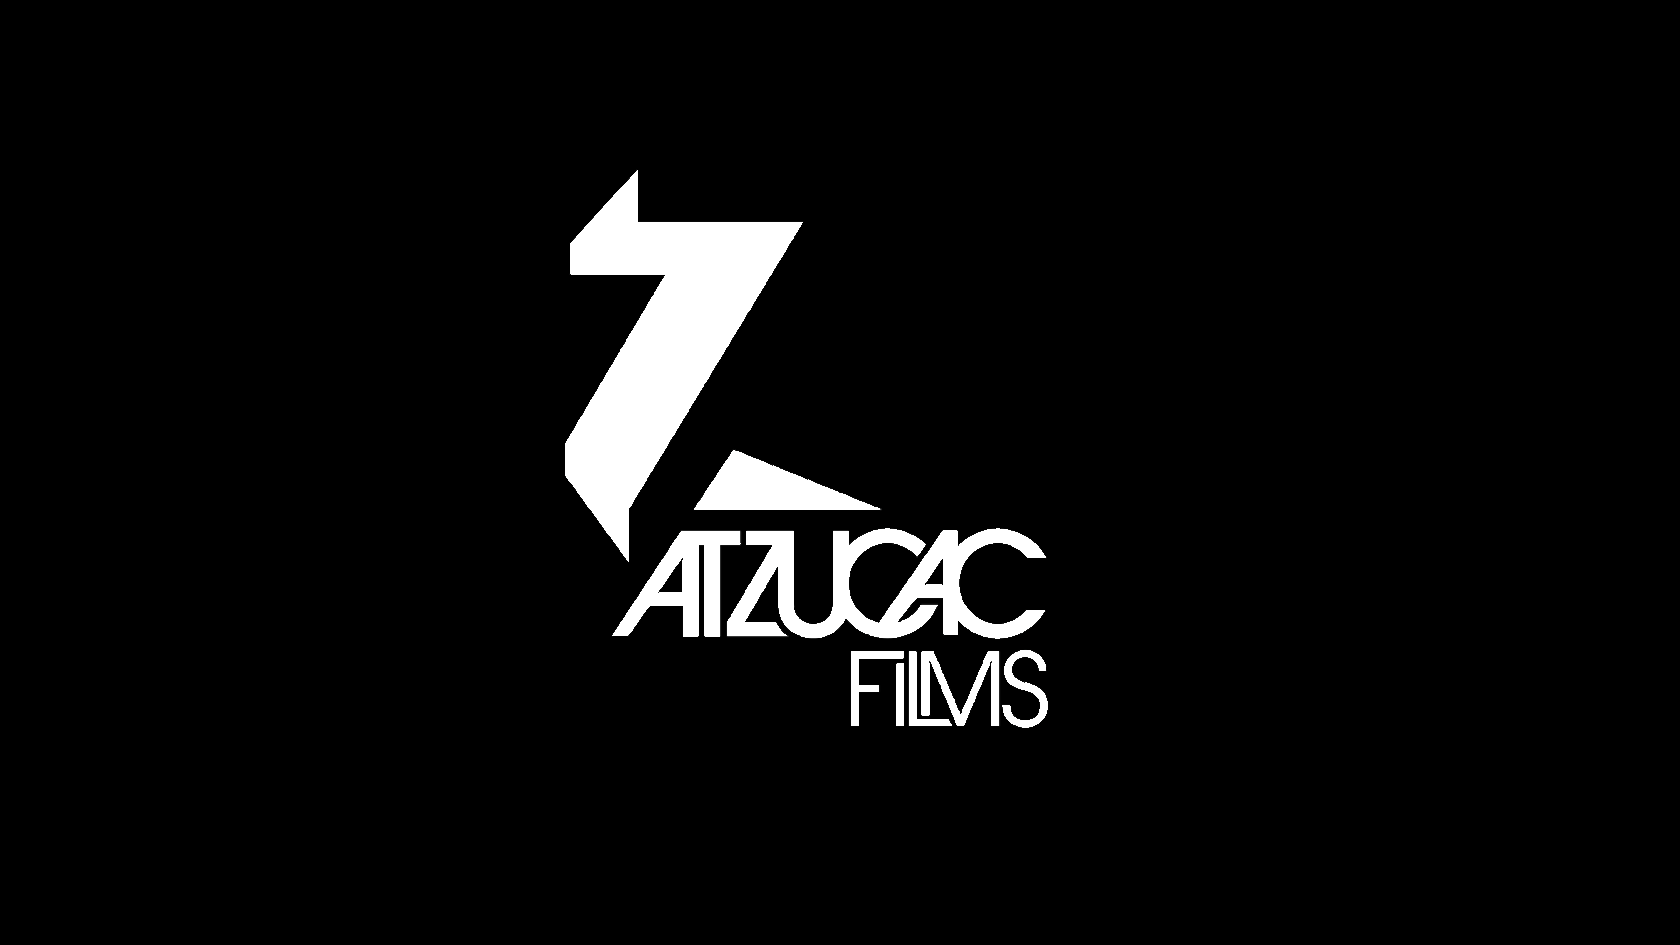 (c) Atzucacfilms.com